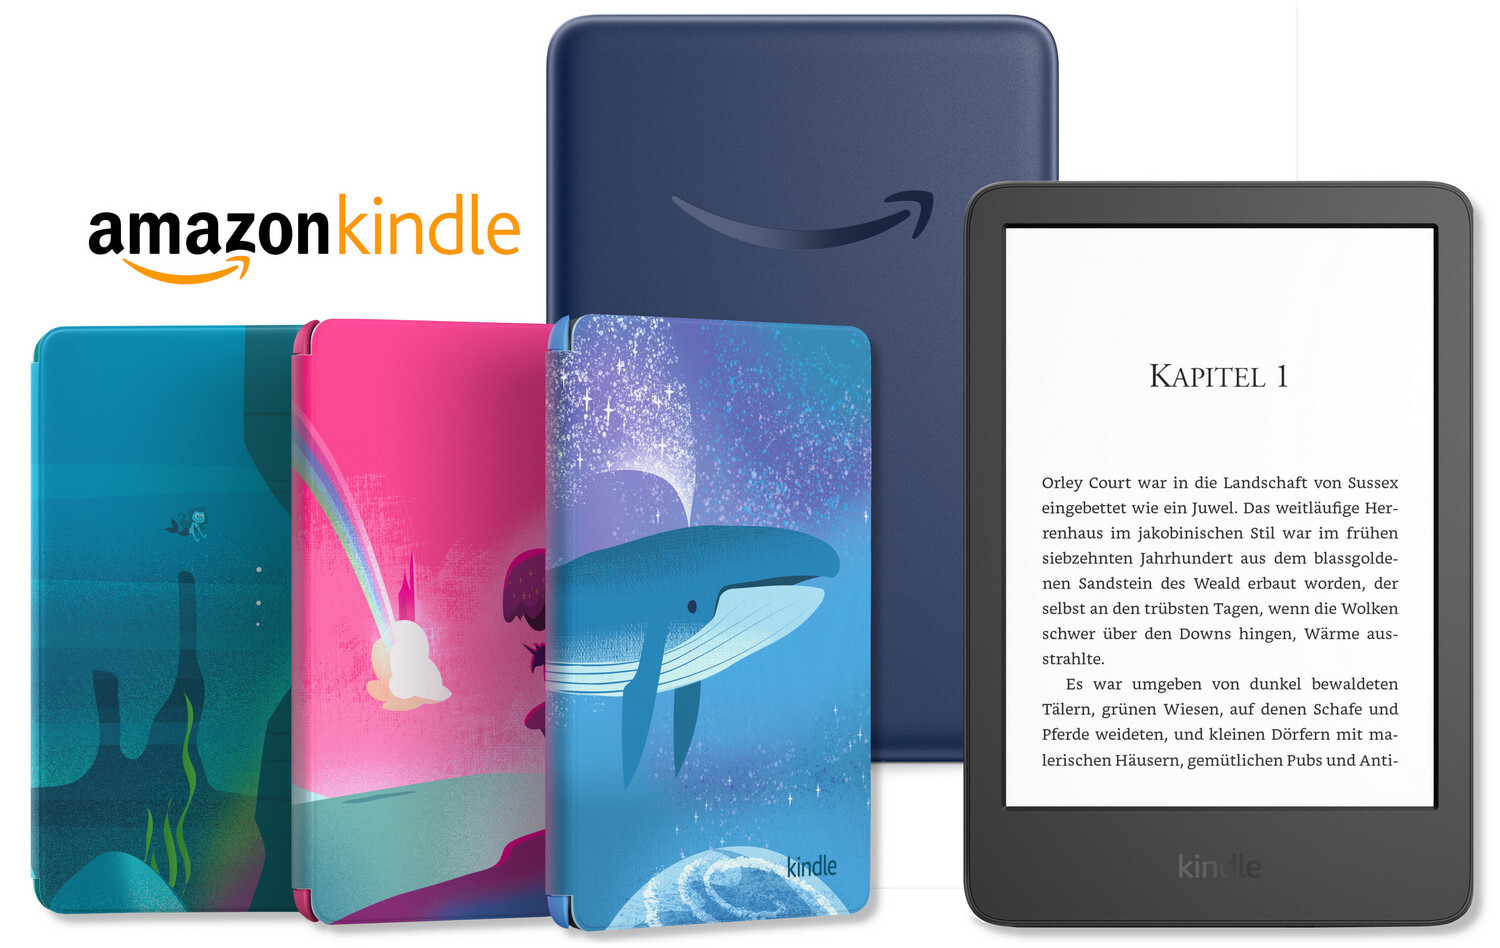 Amazon digital kindle